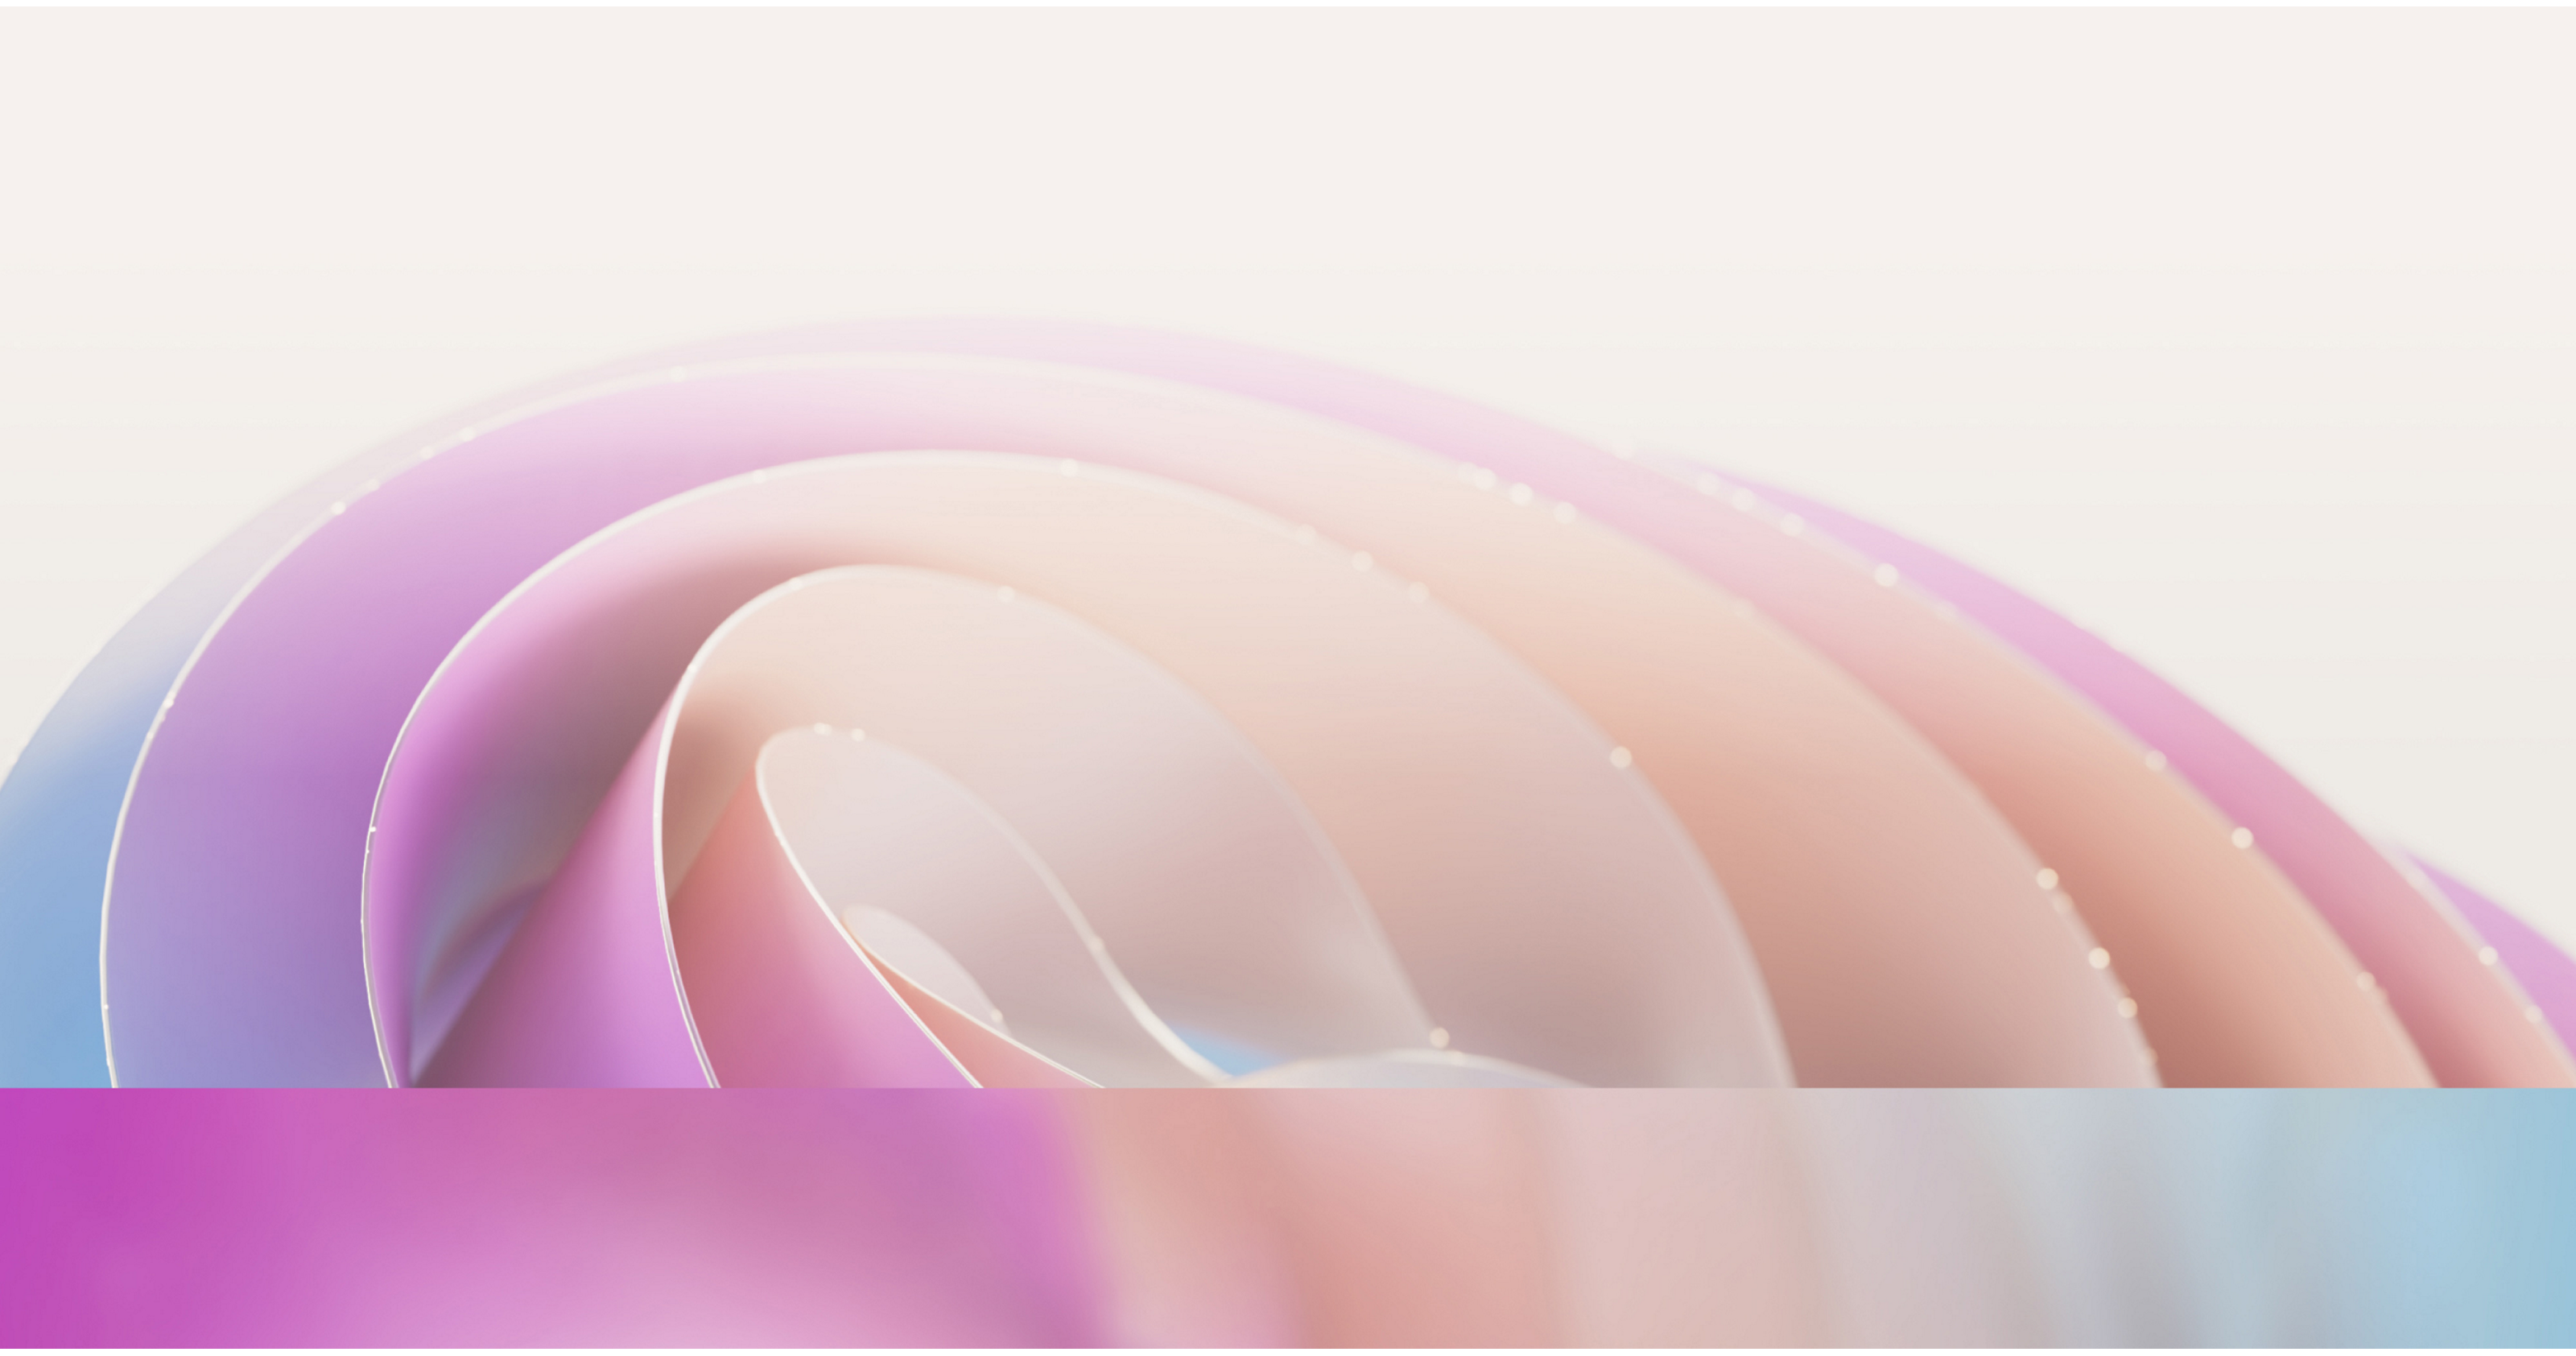 抽象图像，呈现了柔和的粉红色和紫色的平滑流畅曲线，带有微妙的、散射光线的效果。